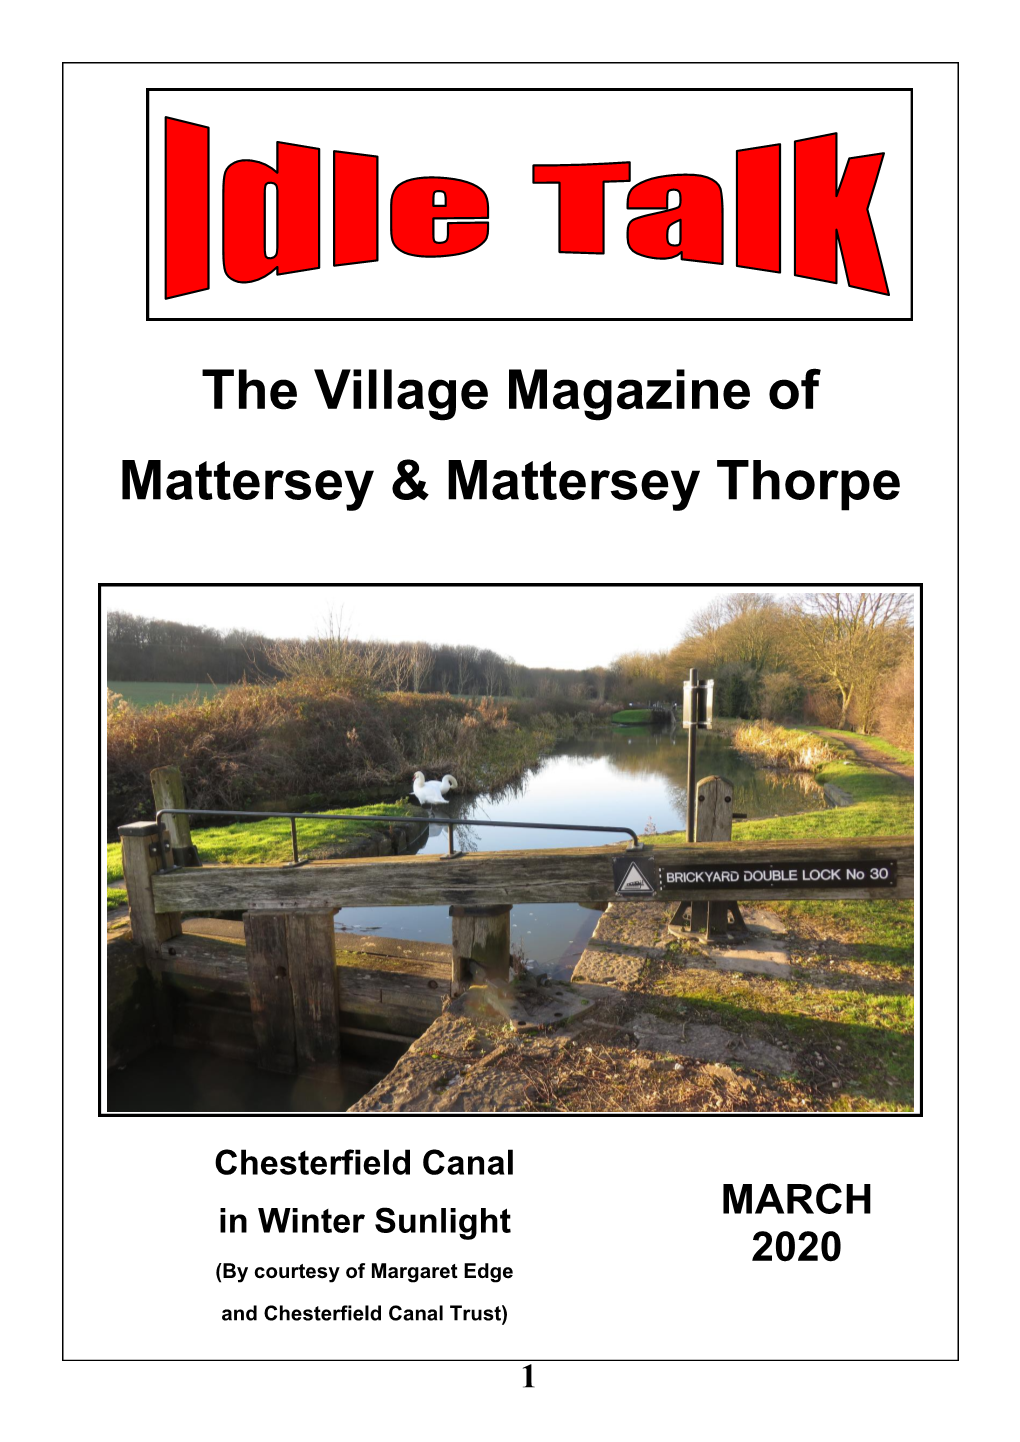 The Village Magazine of Mattersey & Mattersey Thorpe